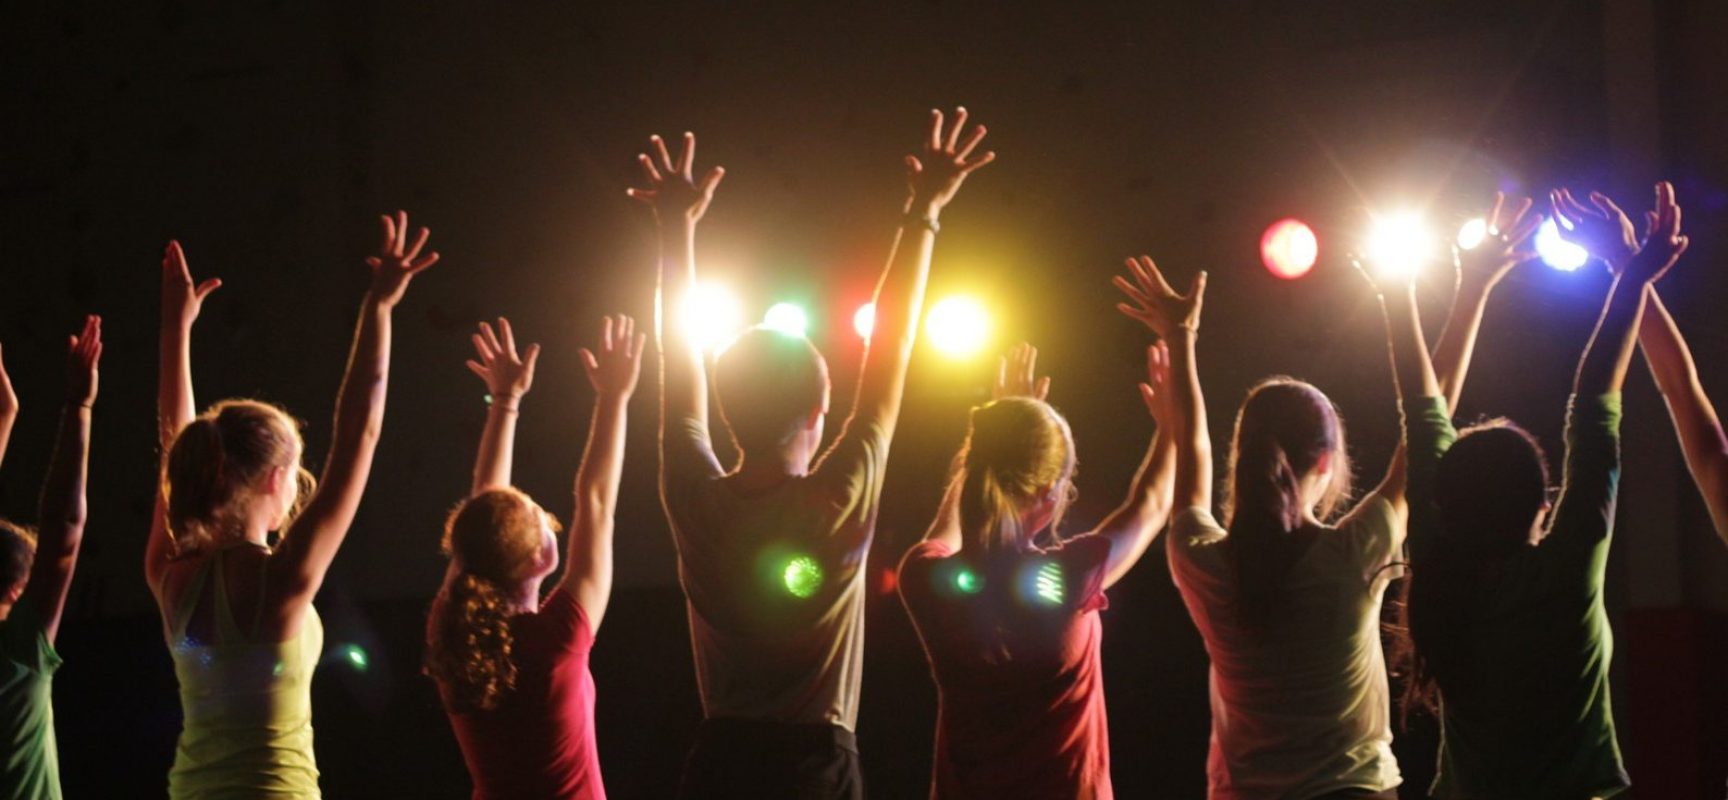 Teatro Popular de Ilhéus oferece curso de teatro e canto para crianças e adolescentes